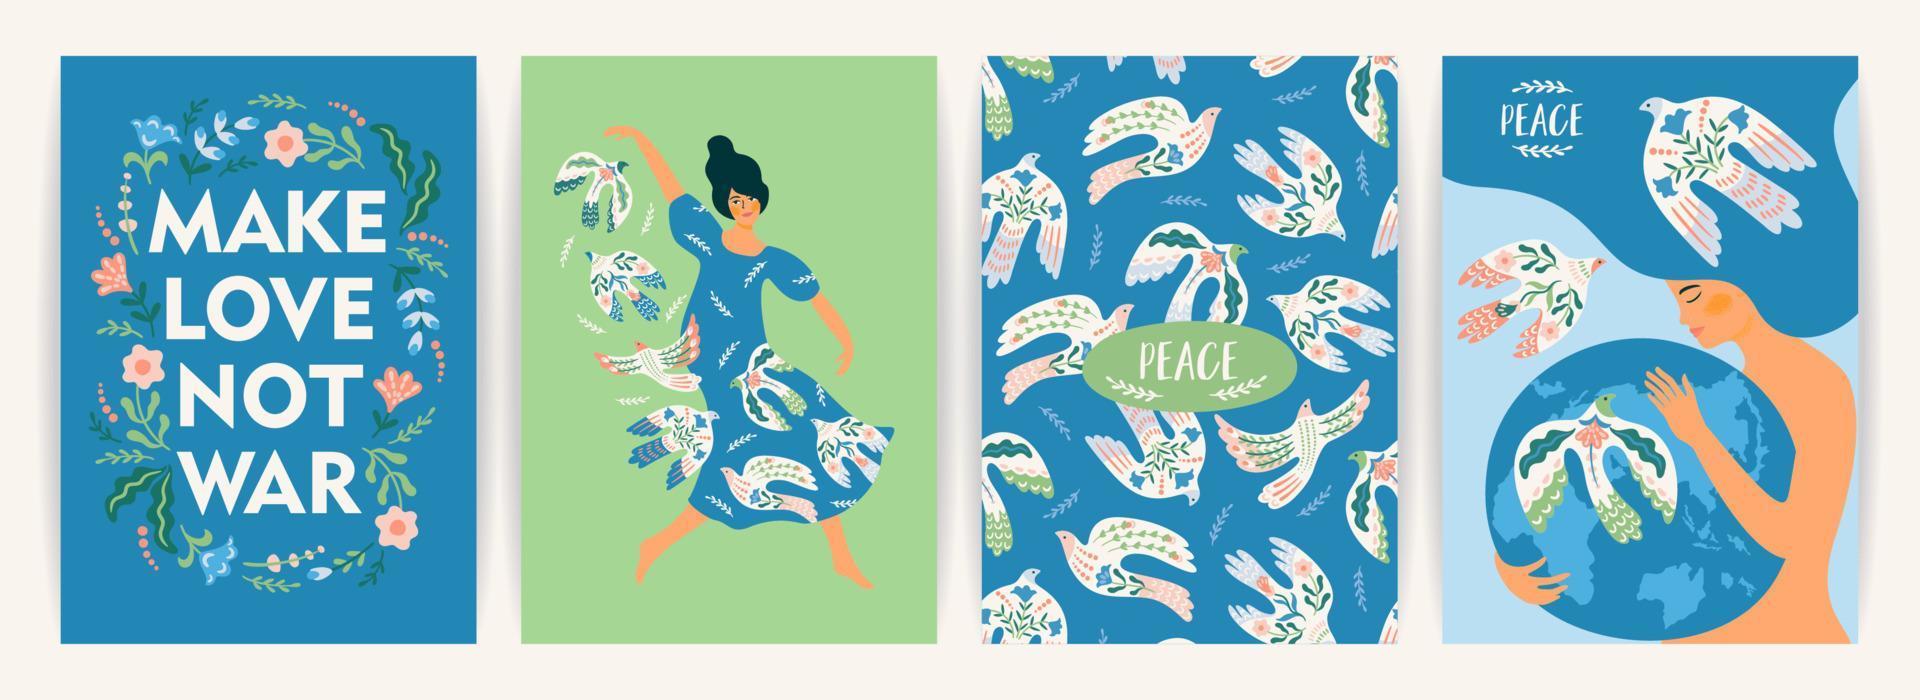 paz en la tierra. mujer y paloma de la paz. conjunto de vectores ilustración para tarjeta, afiche, volante y otros